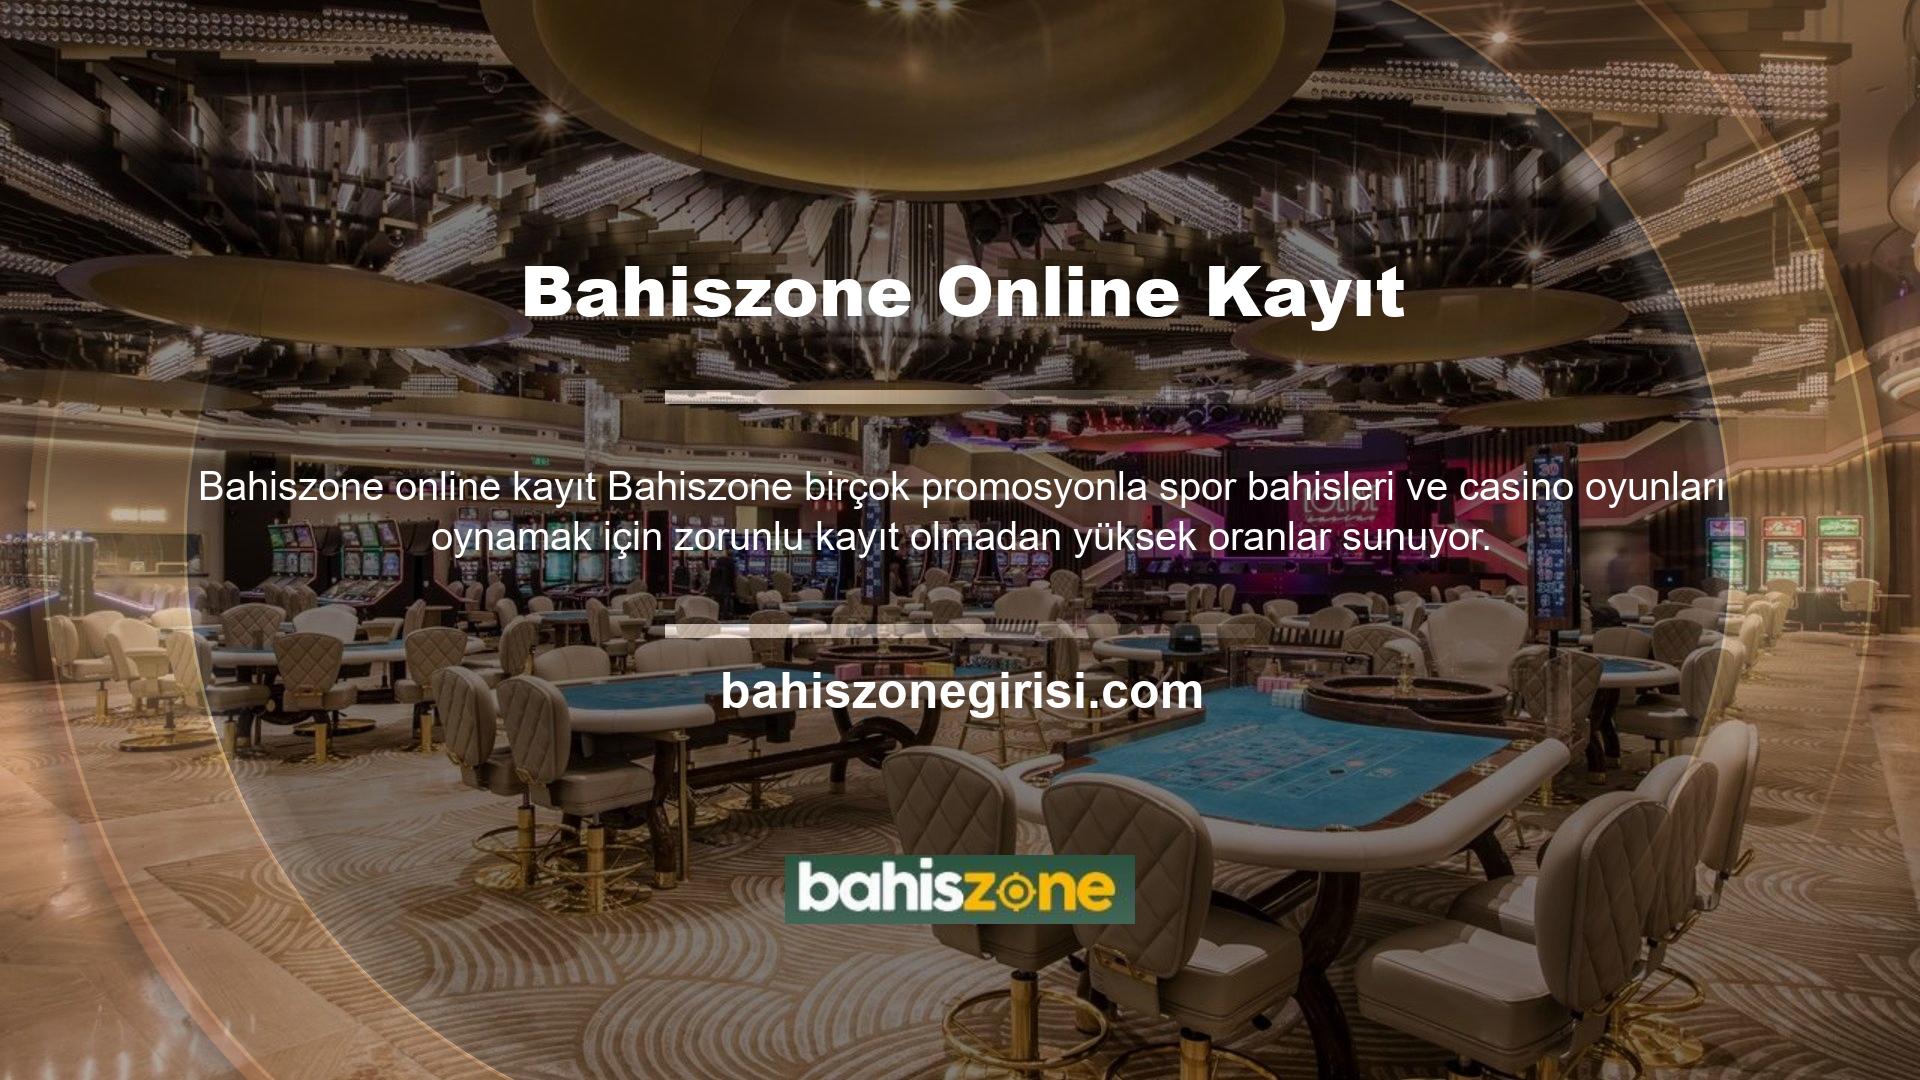 Öncelikle Bahiszone online abonelik satın alırken yapmanız gereken tek şey bir formu eksiksiz doldurmak